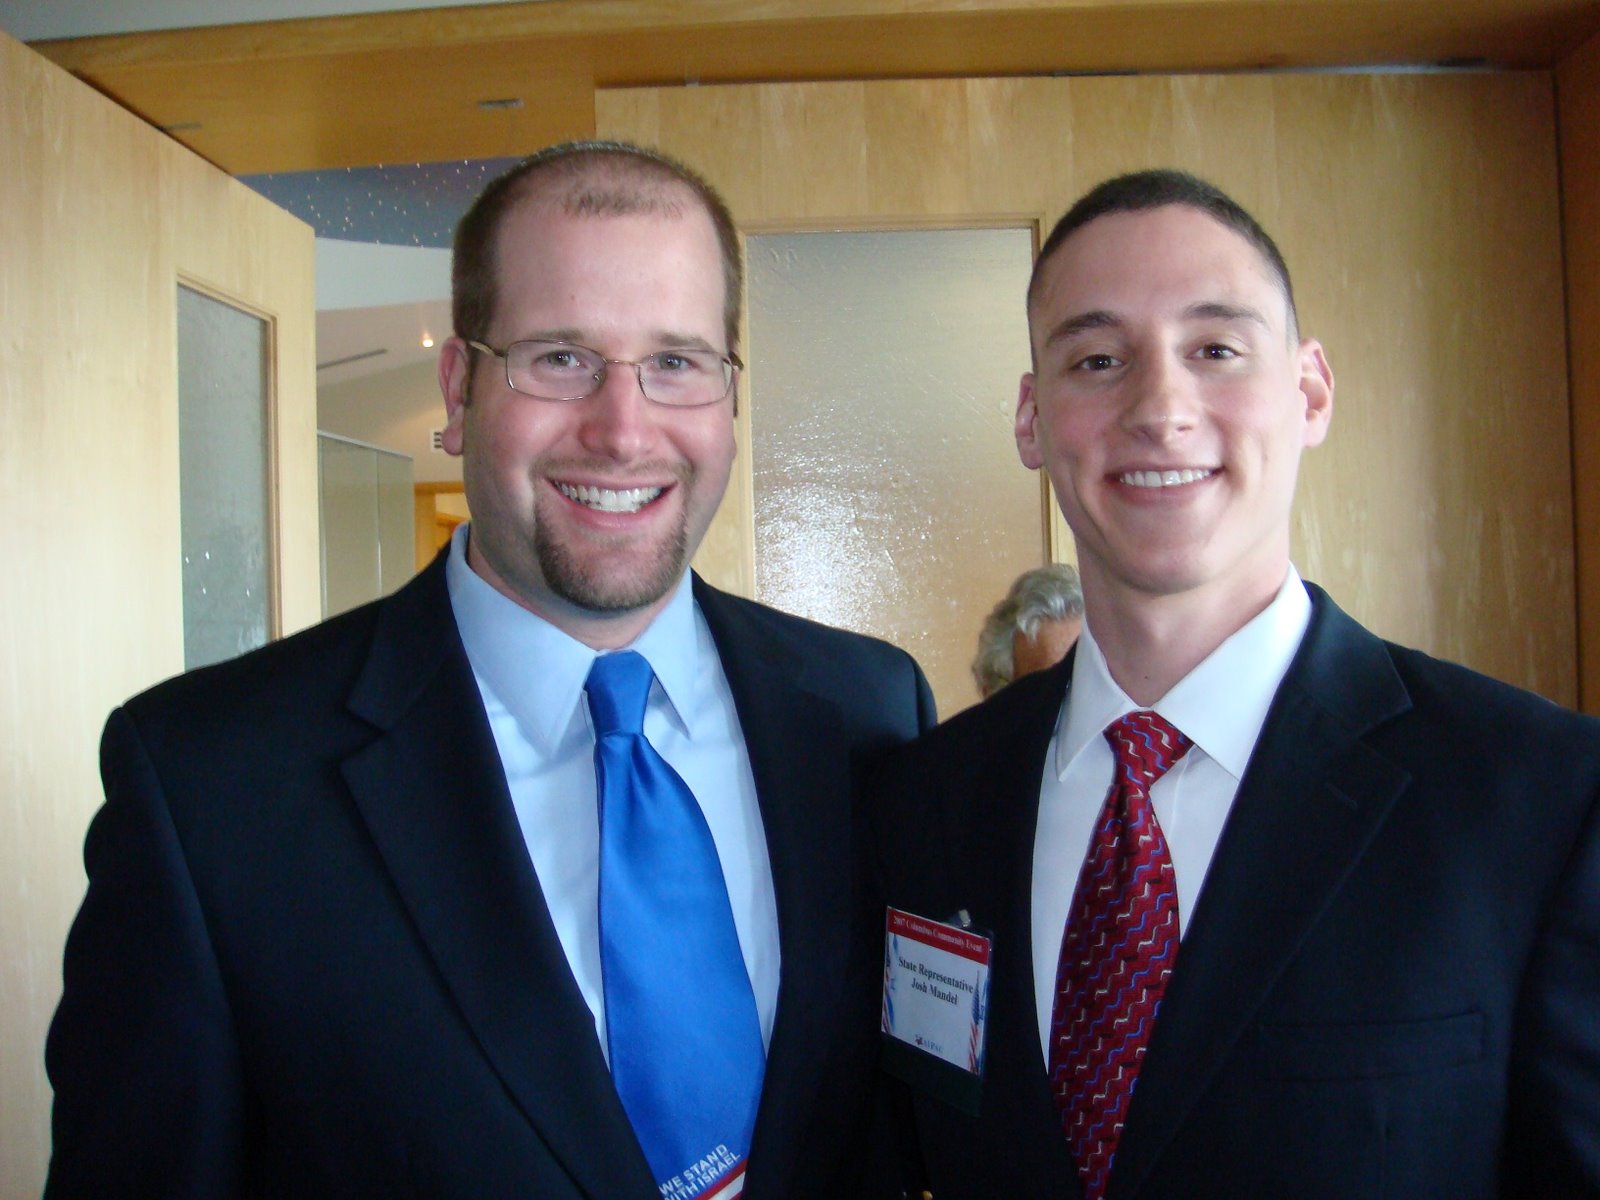 Rep. Josh Mandel and Rabbi Jason Miller at an AIPAC event